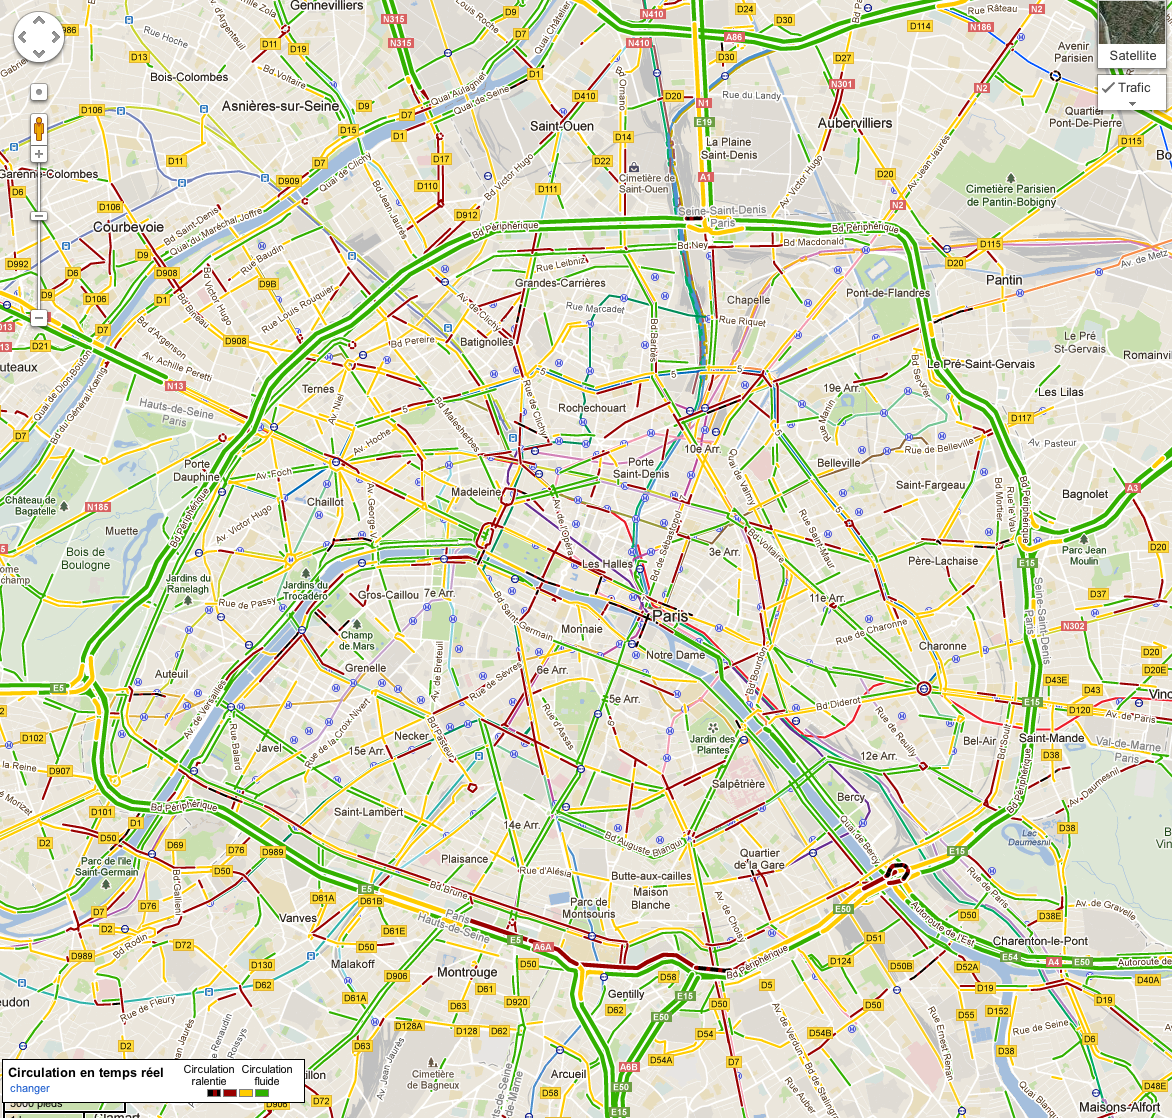 Google transports en commun Paris